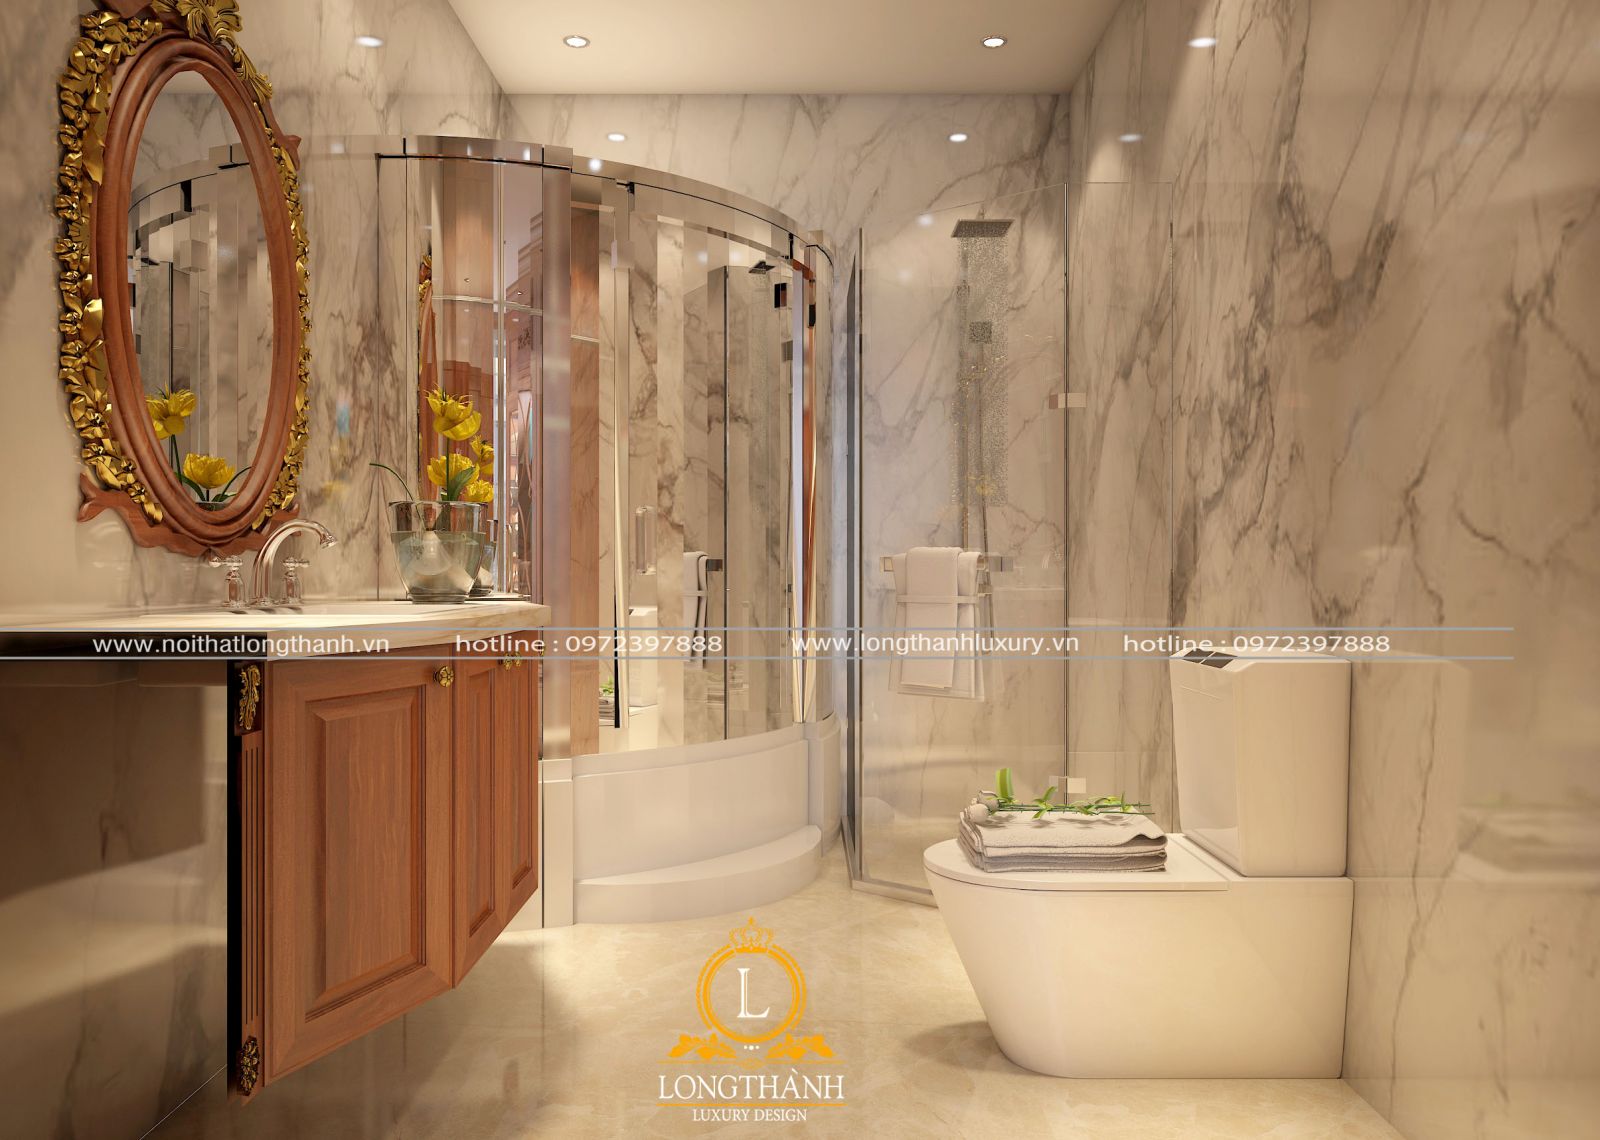 Nội thất phòng tắm tân cổ điển được thiết kế tối giản để phù hợp với nhiều diện tích phong cách thiết kế từ nhà phố, căn hộ, biệt thự